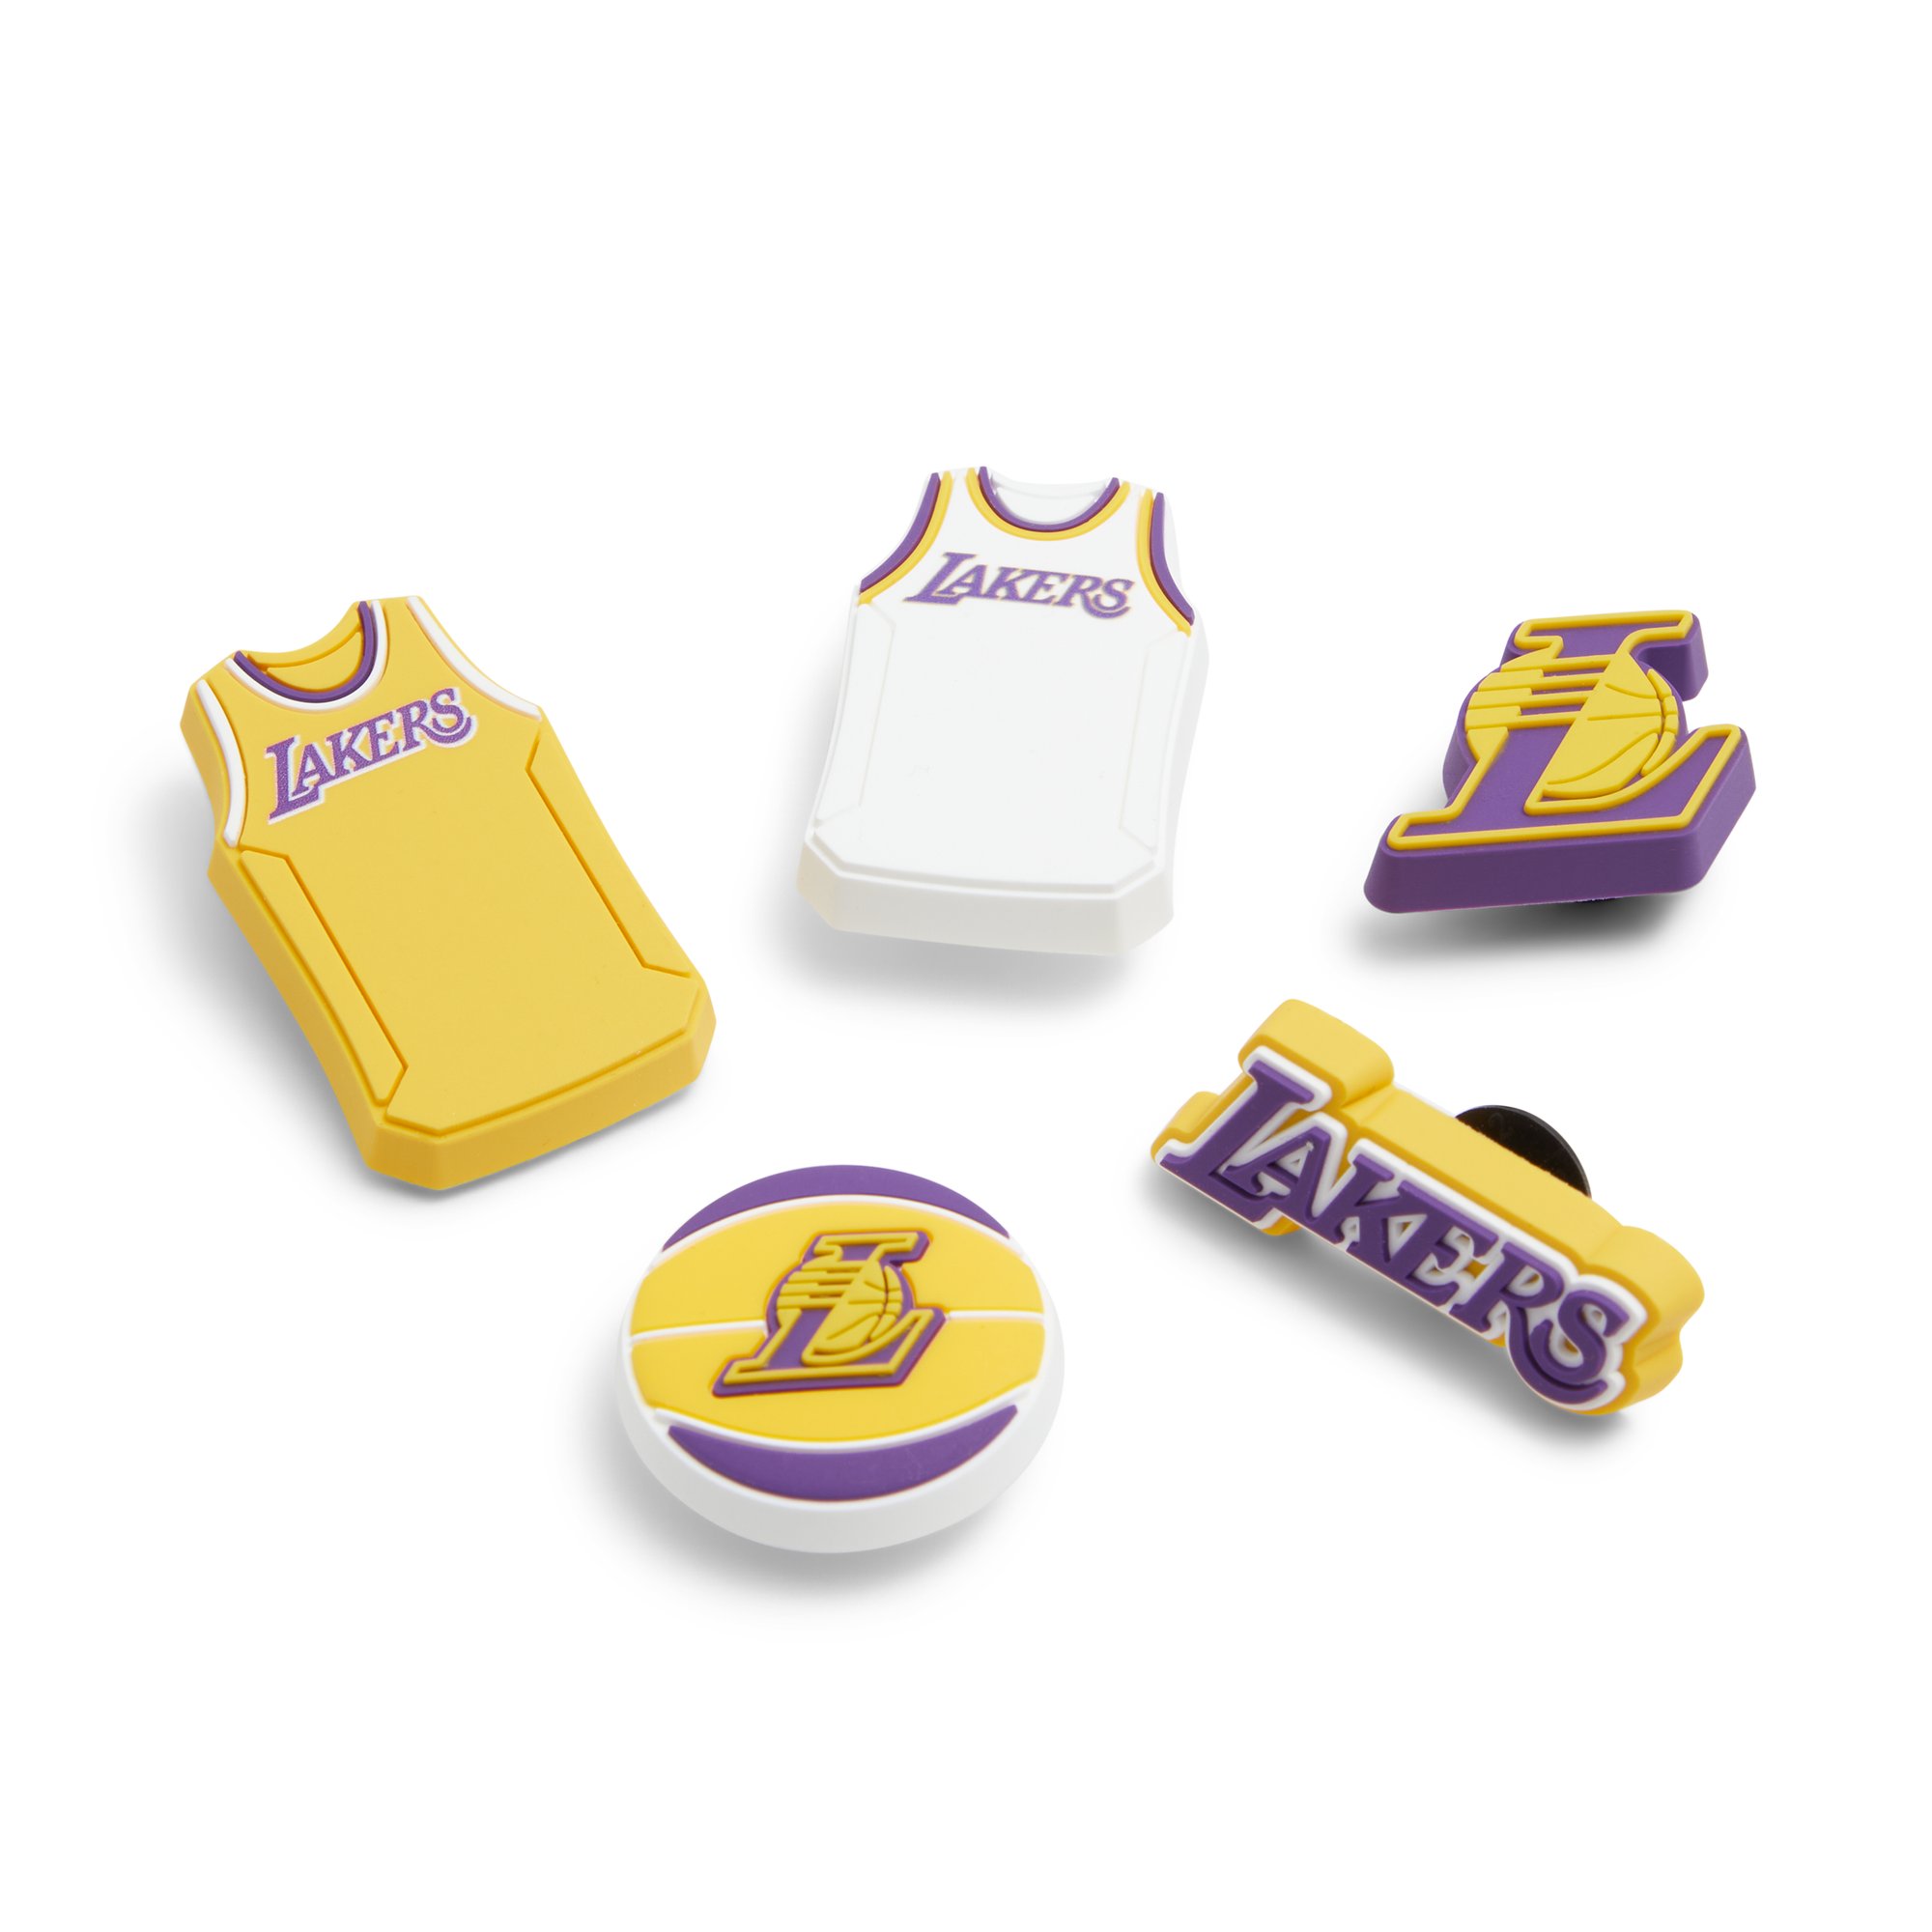 Crocs Jibb Lakers - Kids Bags and Jibbitz - Multi